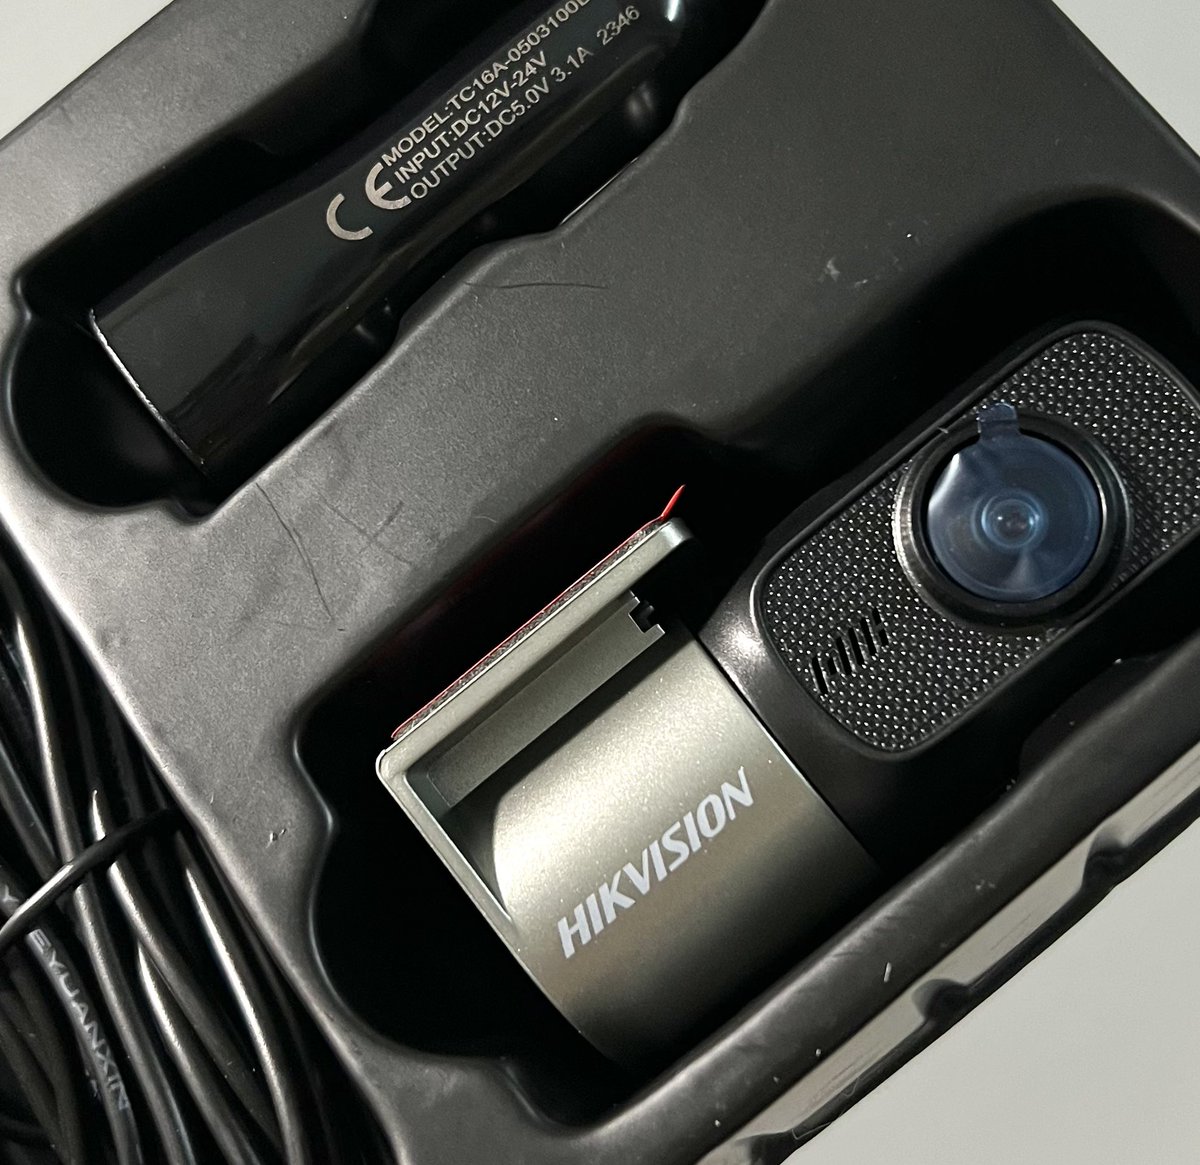 ไปเห็นรีวิวกล้องติดรถ hikvision d1 pro ภาพชัด + ราคาดีด้วย เลยกดมาเลย เดี๋ยวพรุ่งนี้ติดลองกล้องมารีวิวเพิ่มม 🥺